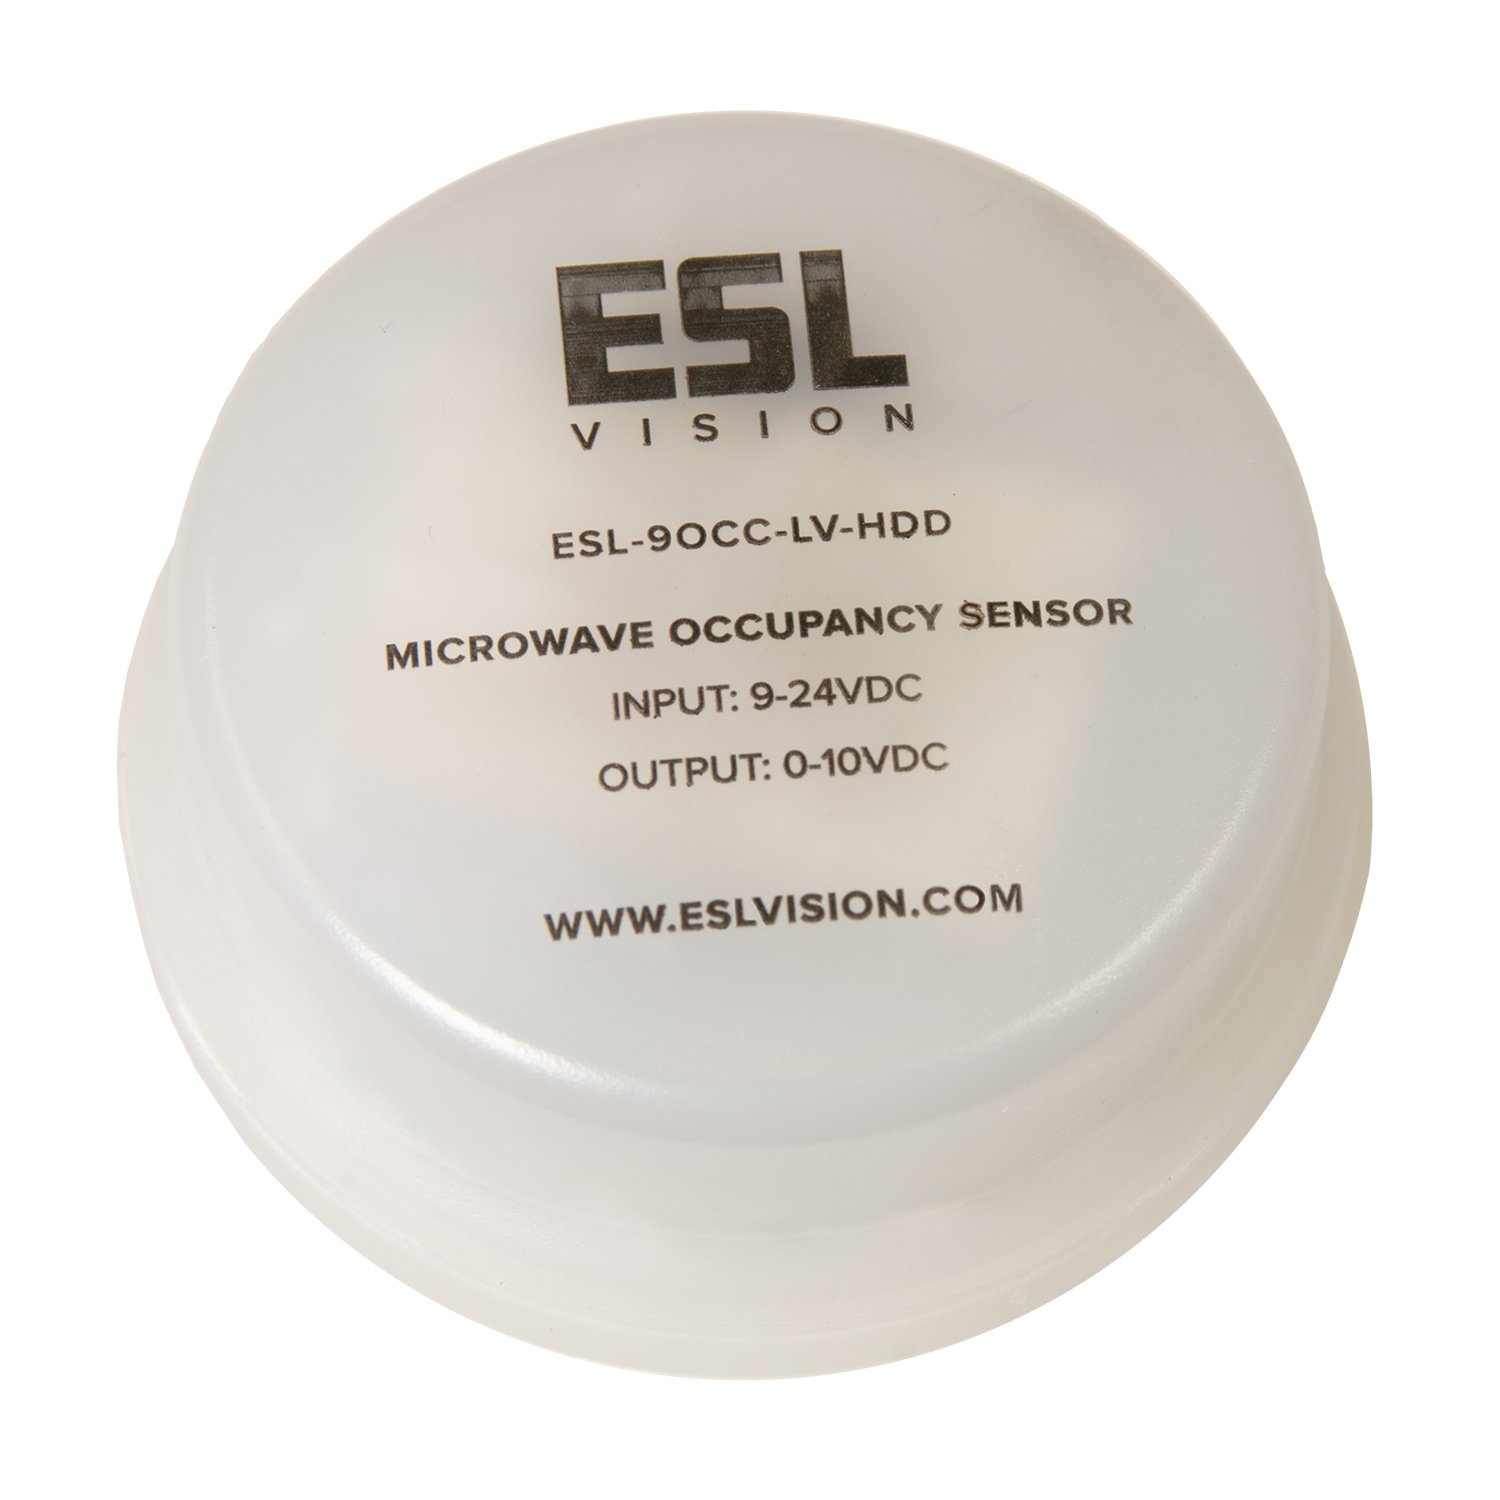 ESL-9OCC-LV-HDD